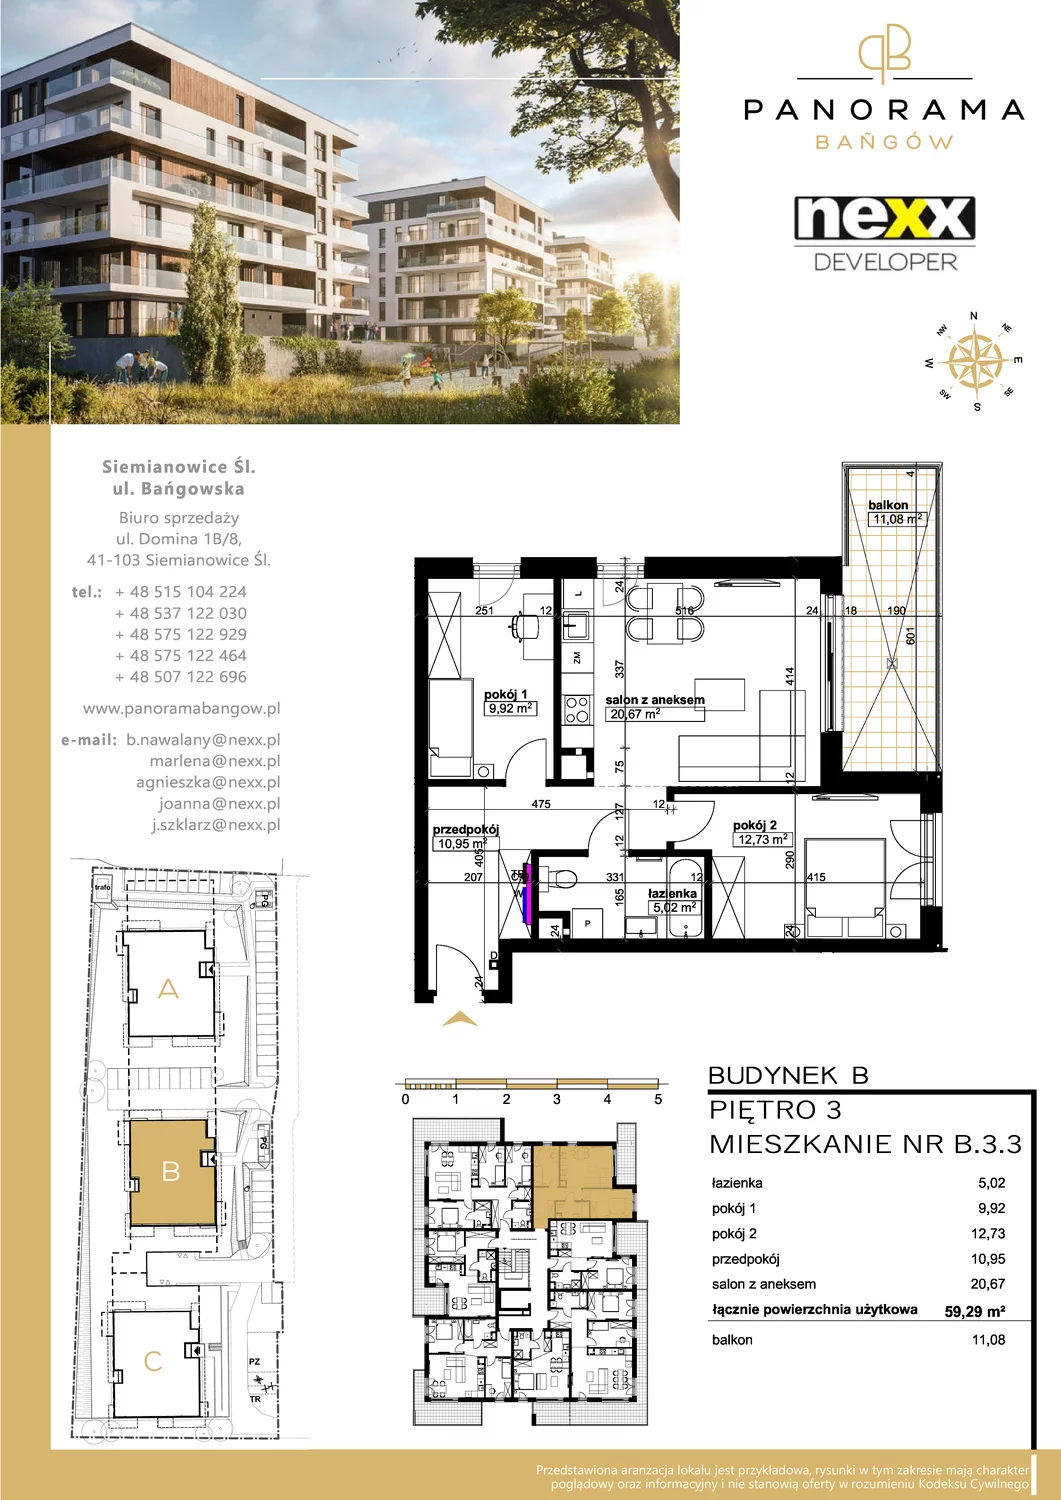 Mieszkanie 59,29 m², piętro 3, oferta nr B 3.3, Panorama Bańgów, Siemianowice Śląskie, Bańgów, ul. Bańgowska